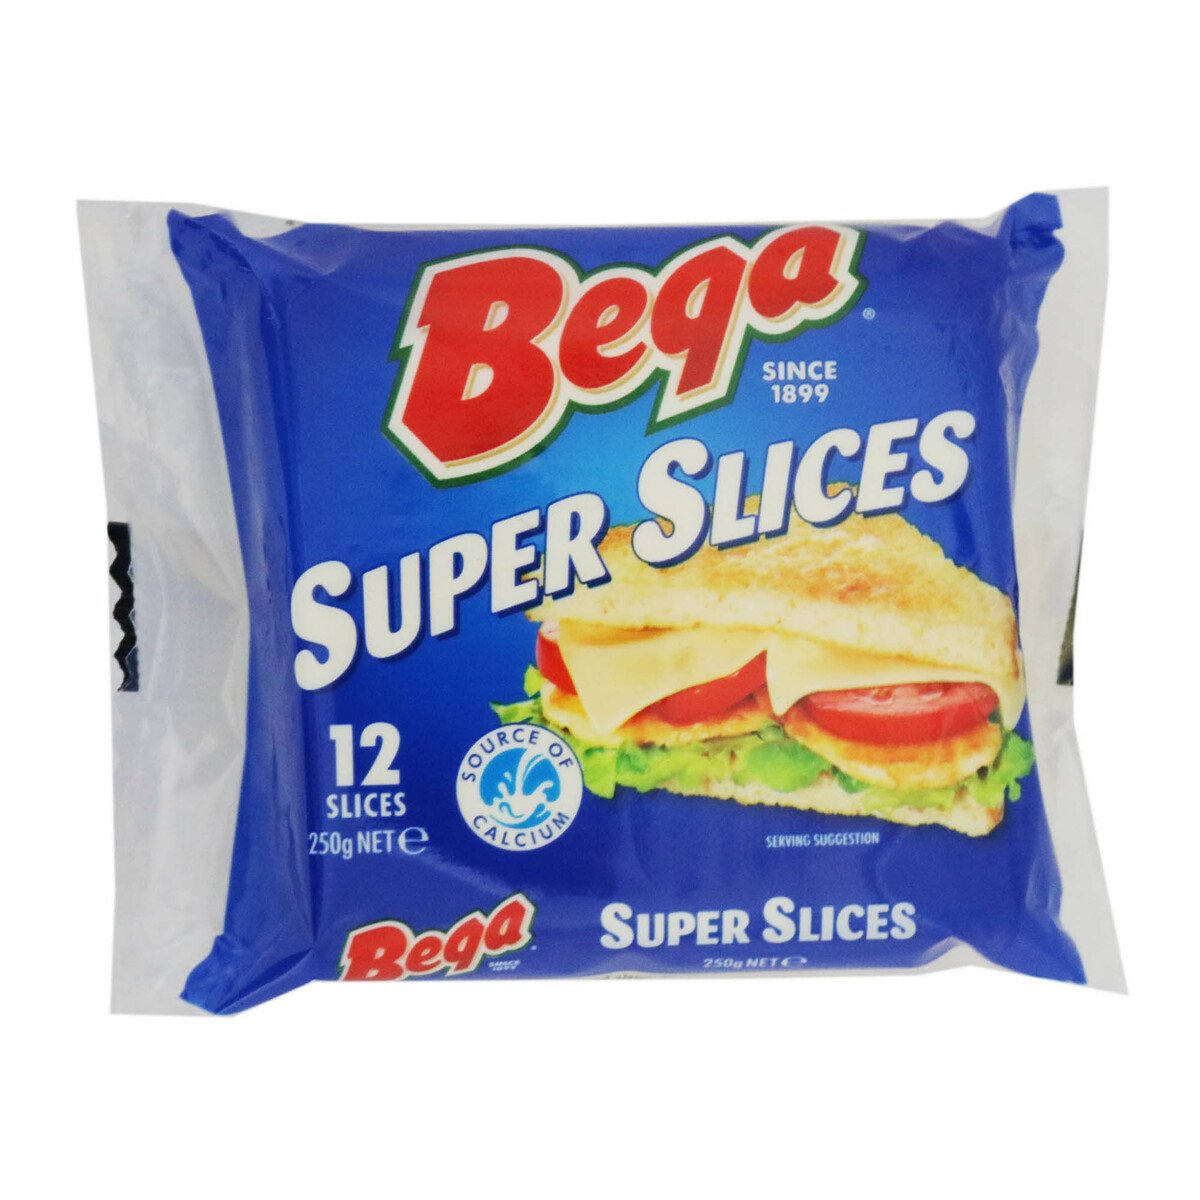 Bega Super Slices Low Sugar 250g